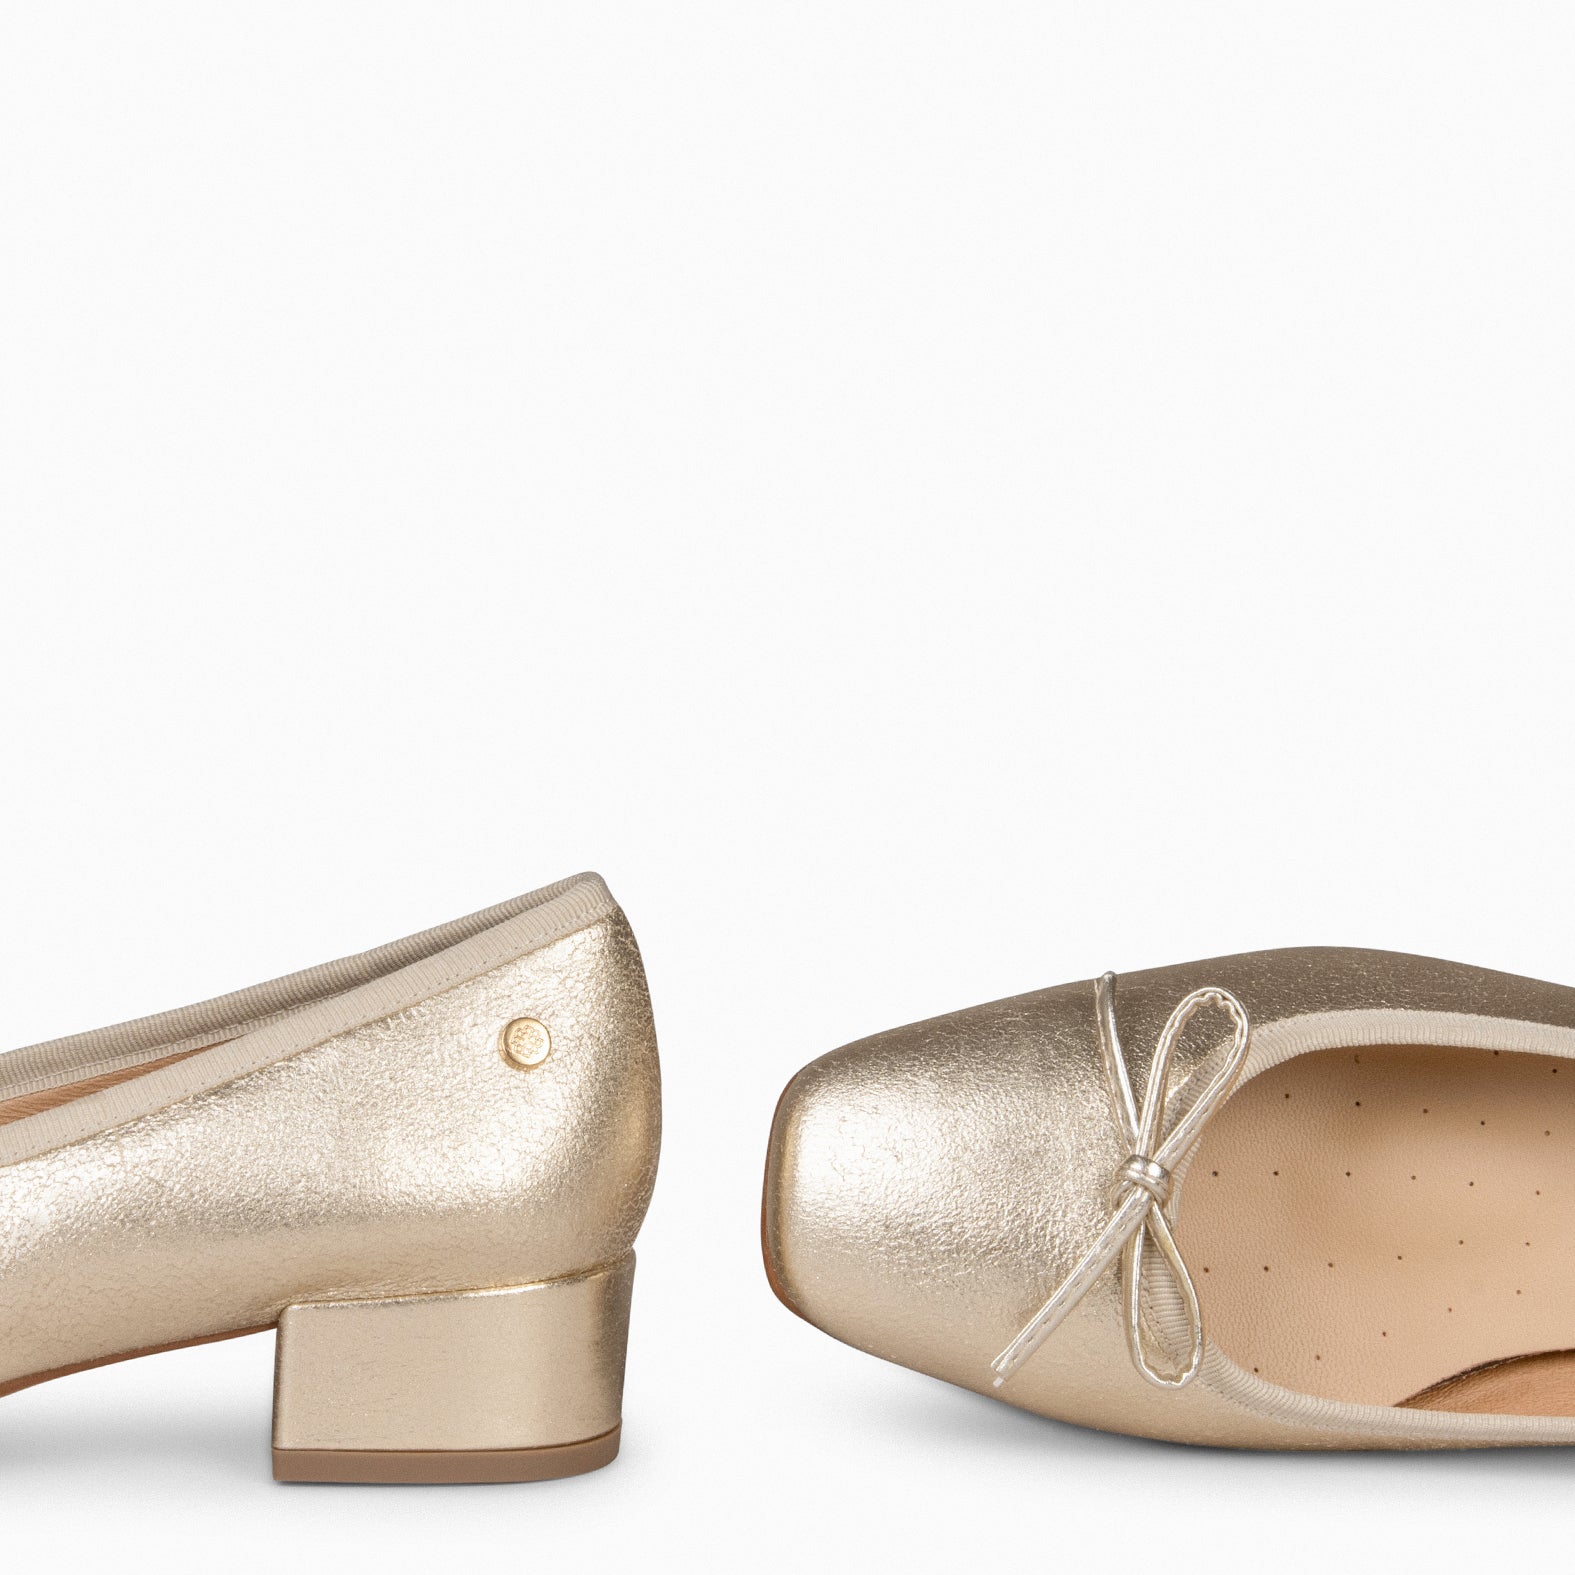 OPERA – GOLDEN ballerina with heel